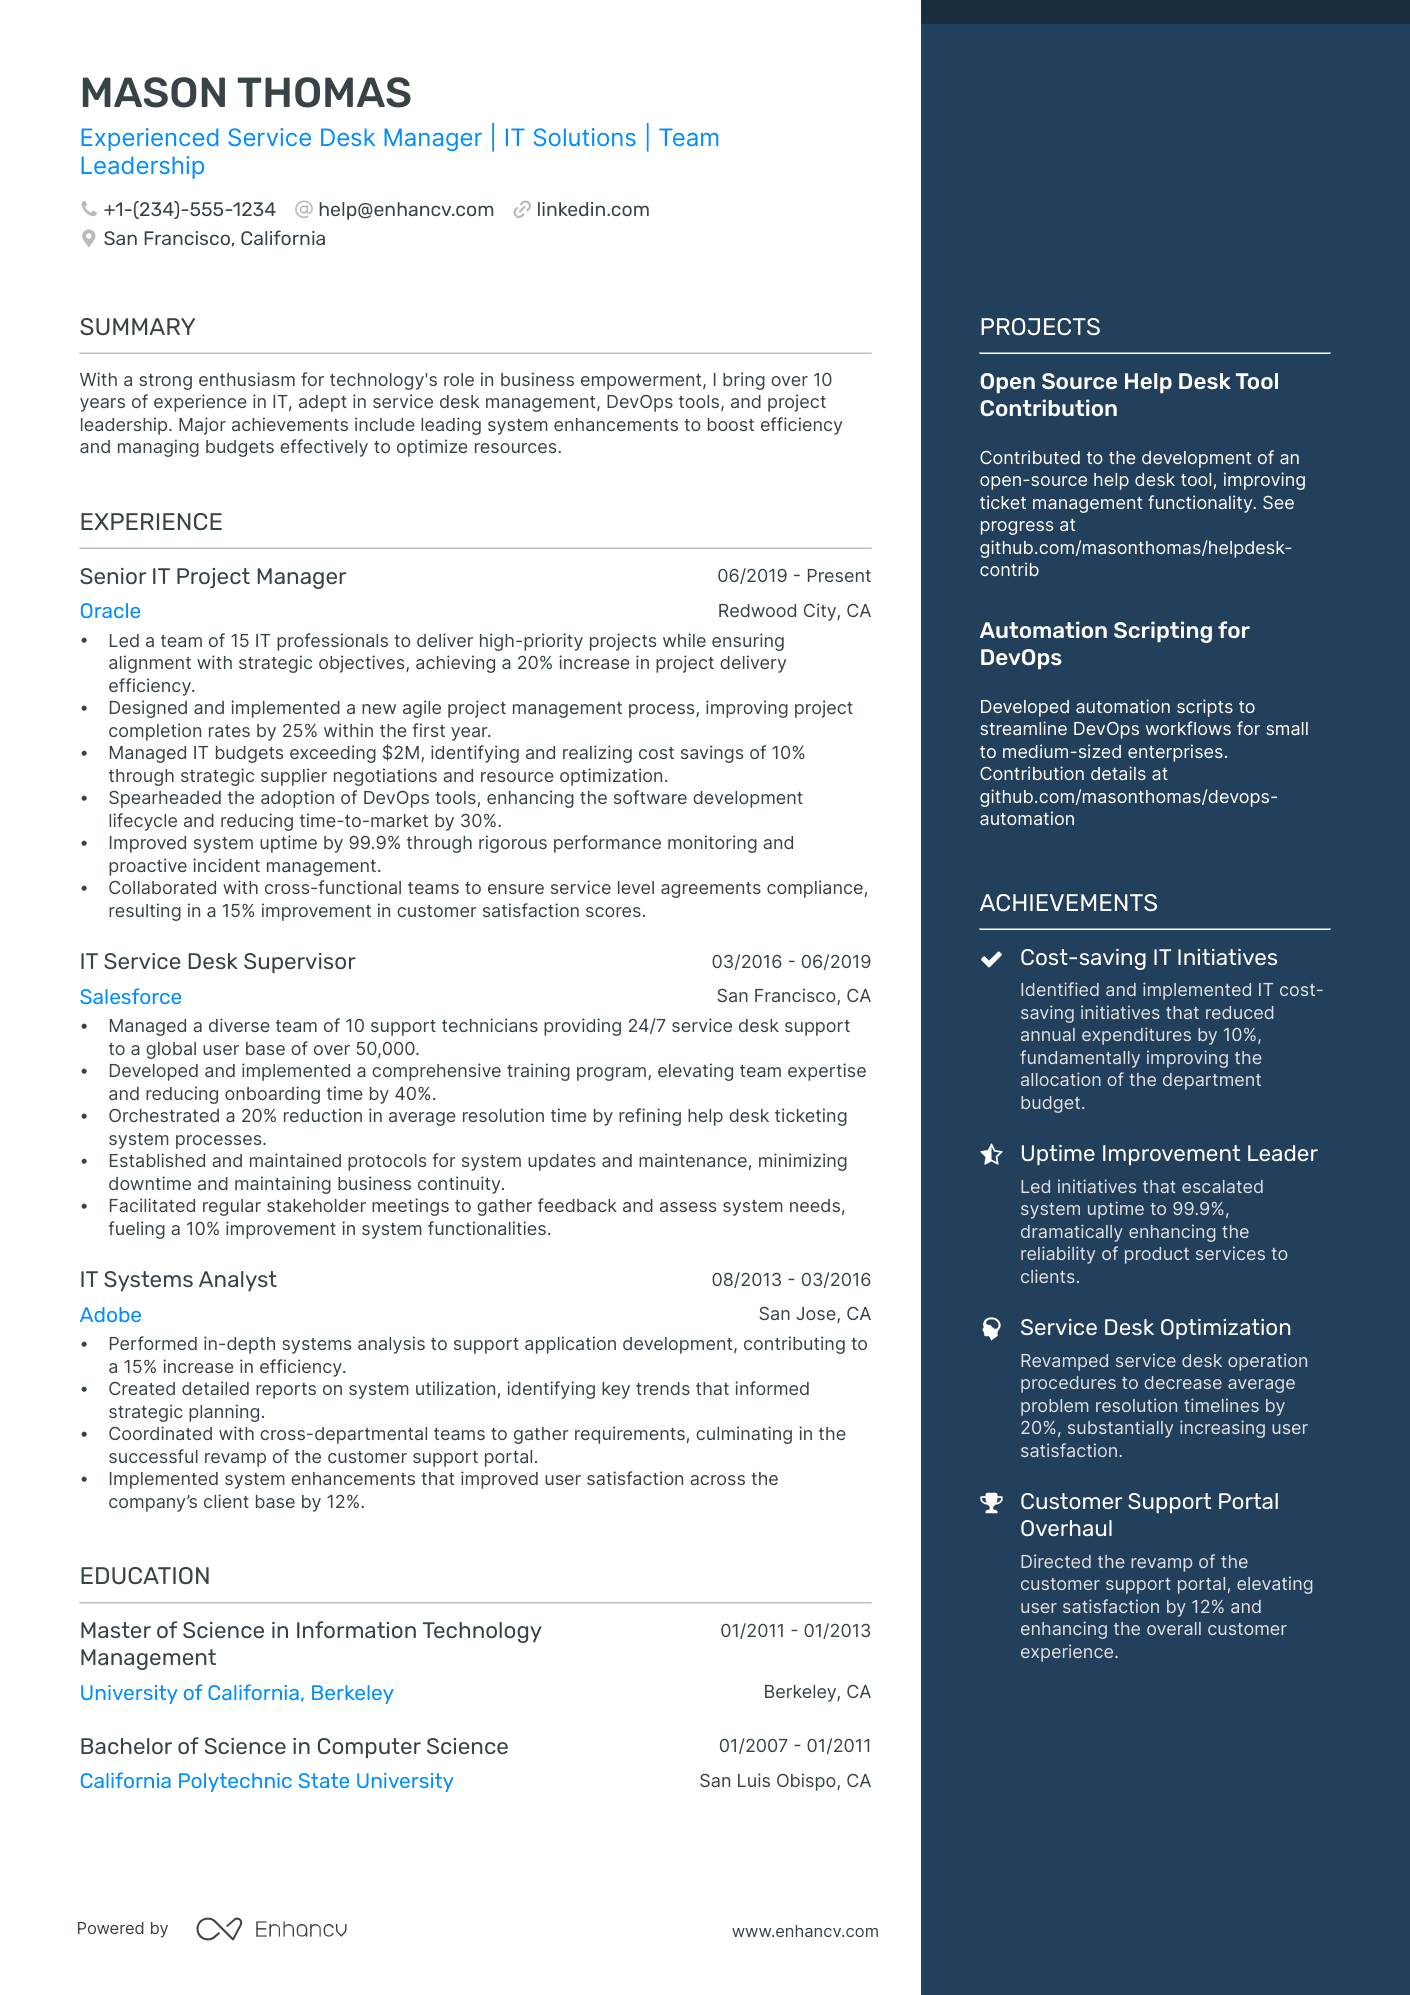 service desk resume template